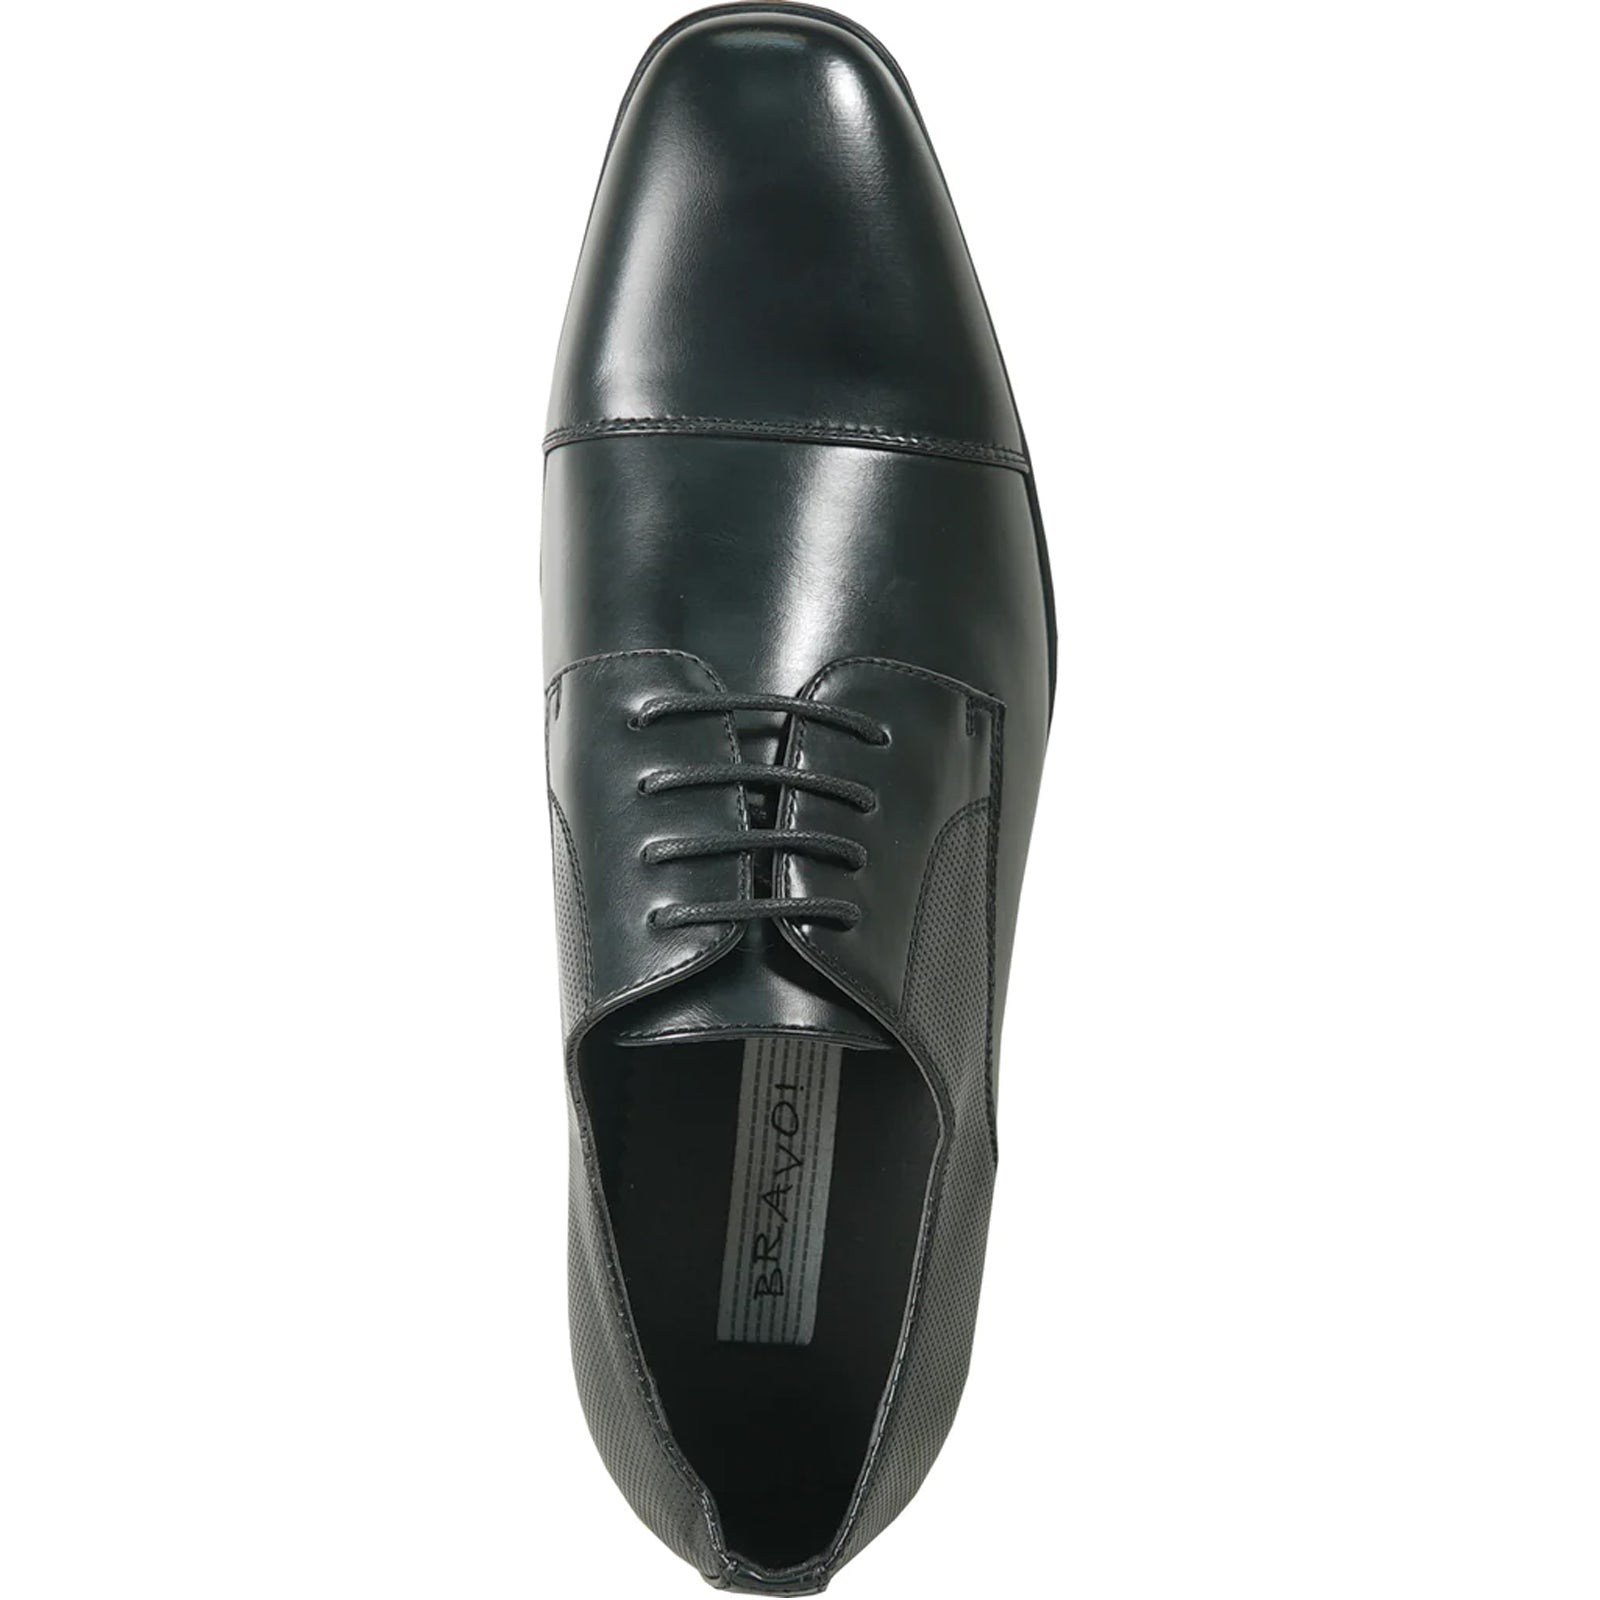 "Black Antique Cap Toe Oxford Men's Dress Shoe - Lace Up Style"